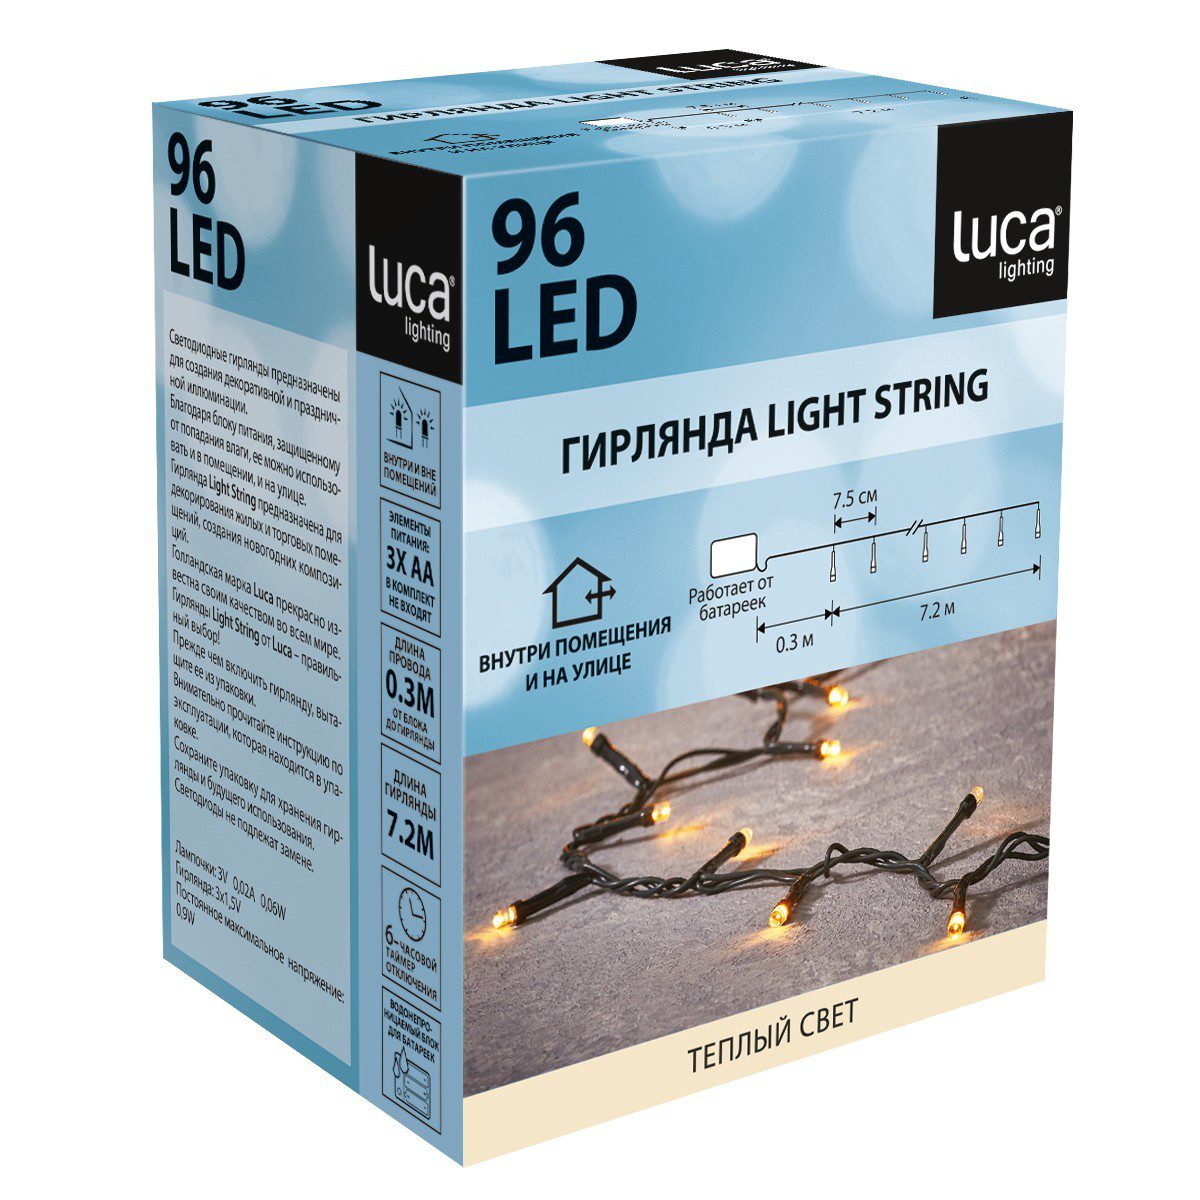 Гирлянда на батарейках Luca Lighting теплый свет с таймером отключения 6 часов (96 ламп, длина гирлянды 720 см)